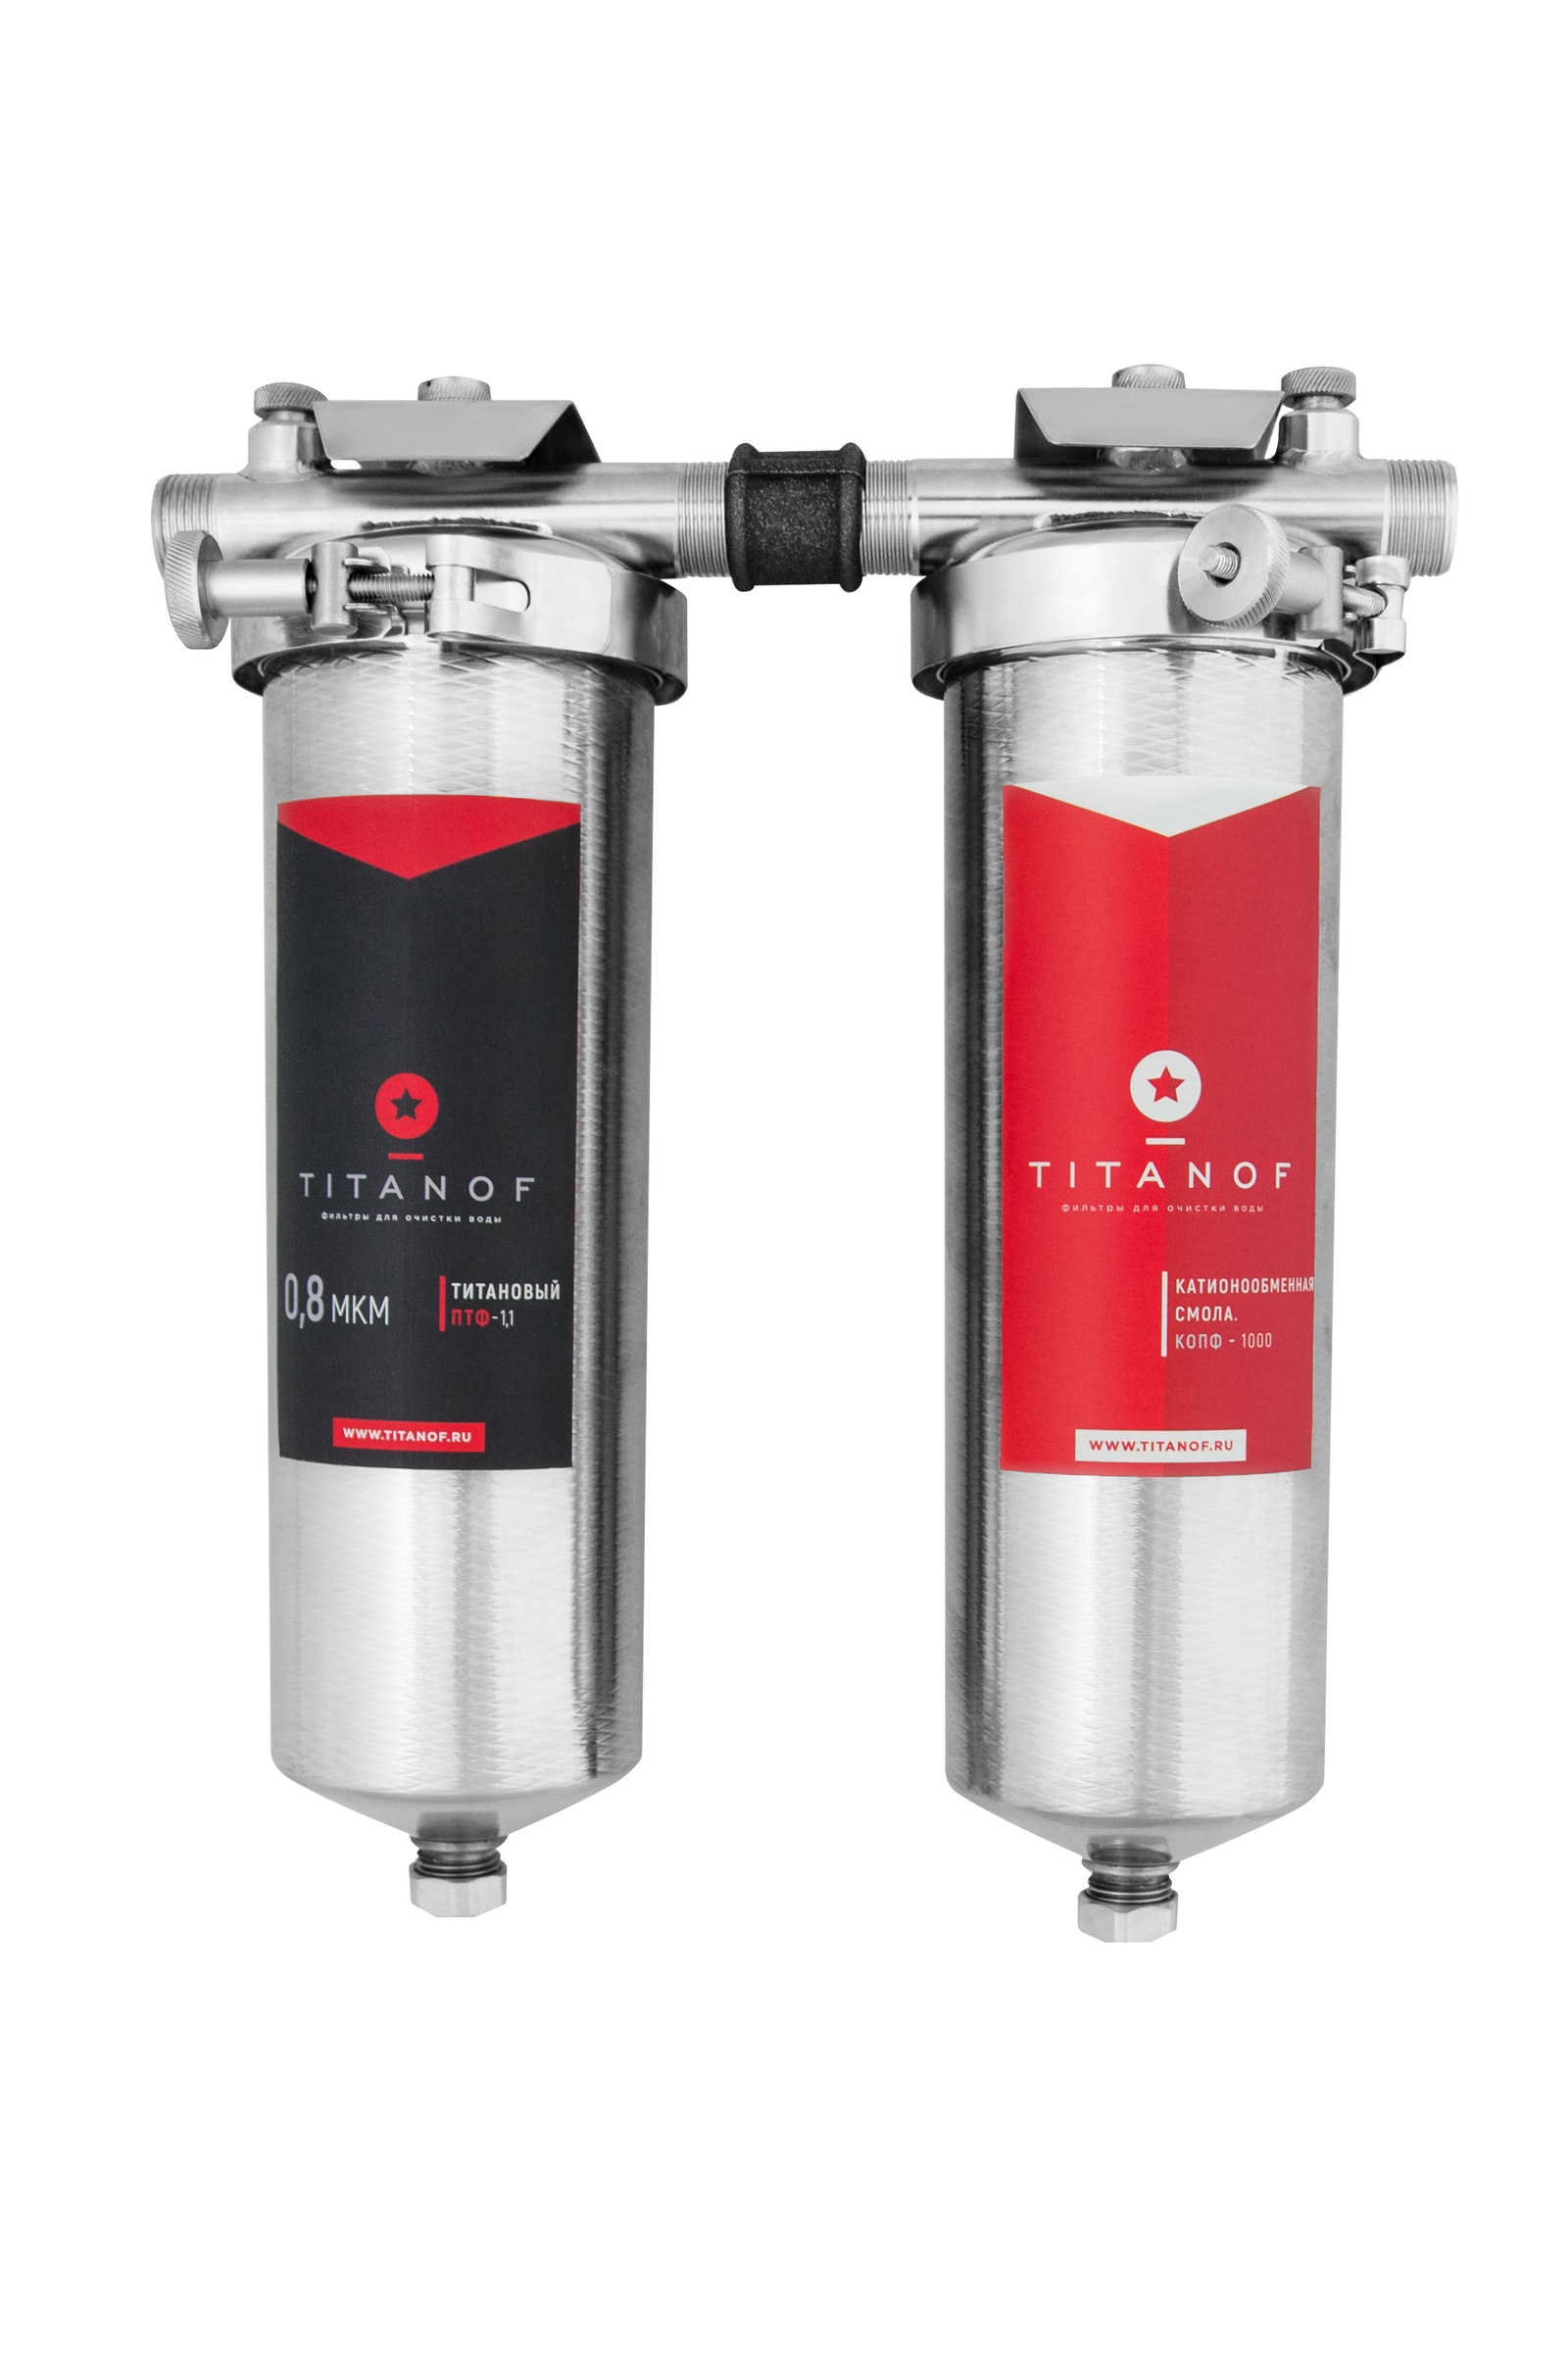 Фильтр для воды титанов отзывы. Титановый фильтр TITANOF. Титановый фильтр 0.1 мкм. Фильтр TITANOF ПТФ 1.1¶1000 Л/час. Титановый фильтр для воды TITANOF ПТФ 0.8 - (250 Л/час).